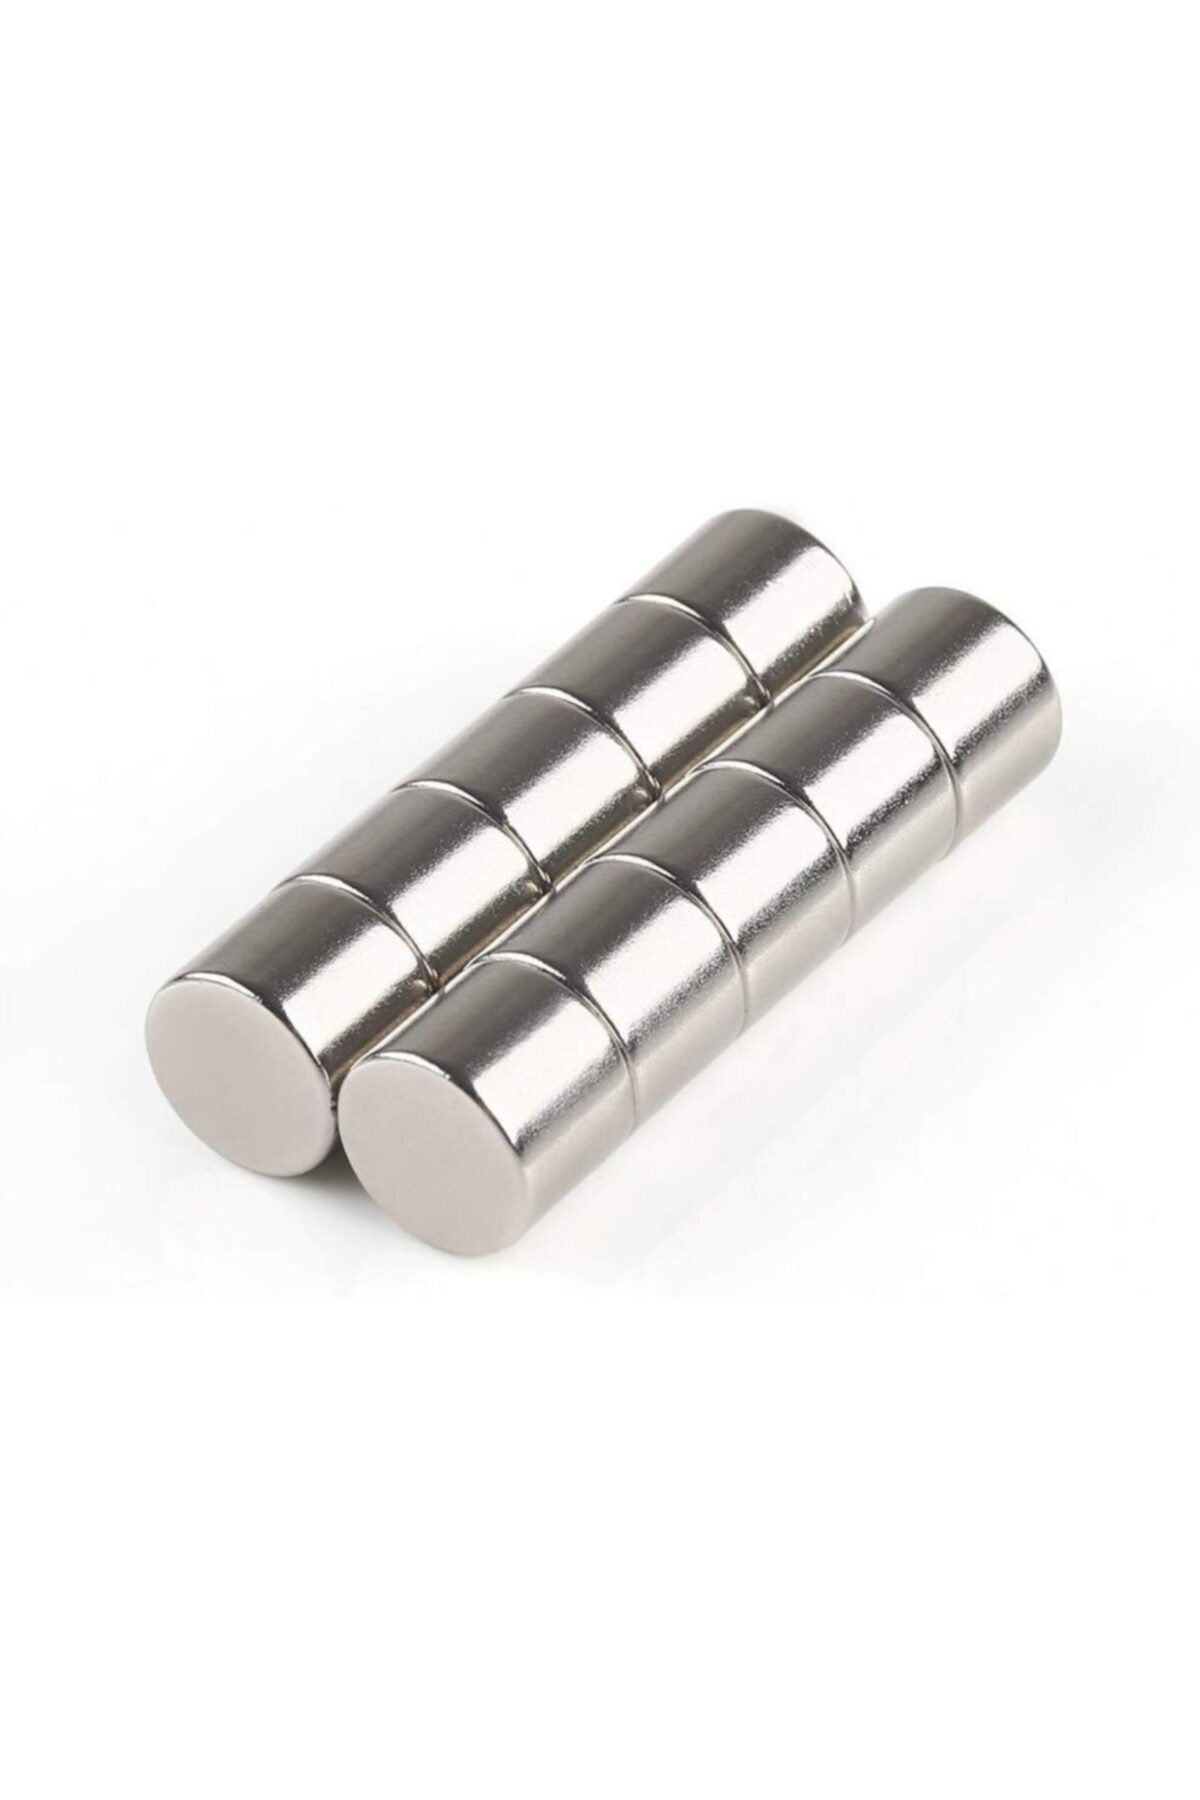 Dünya Magnet 5 Adet Çap 8mm X Kalınlık 5mm Silindir Süper Güçlü Neodyum Mıknatıs